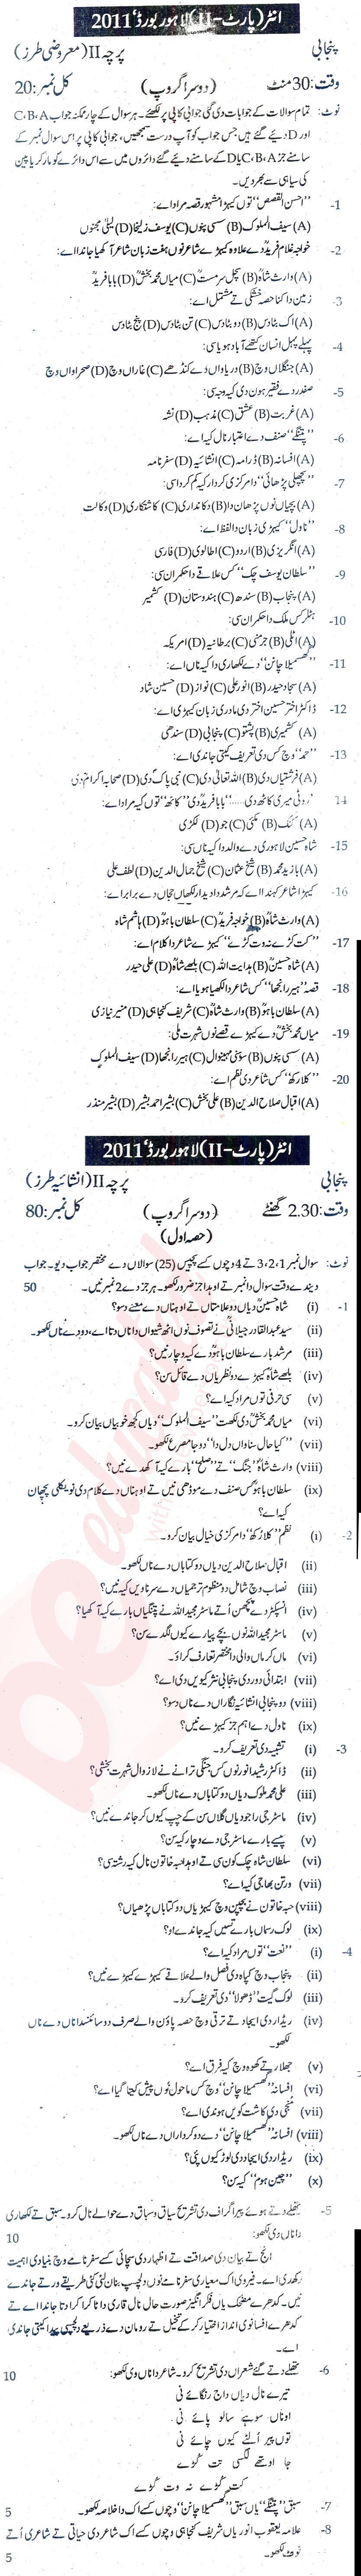 Punjabi FA Part 2 Past Paper Group 2 BISE Lahore 2011